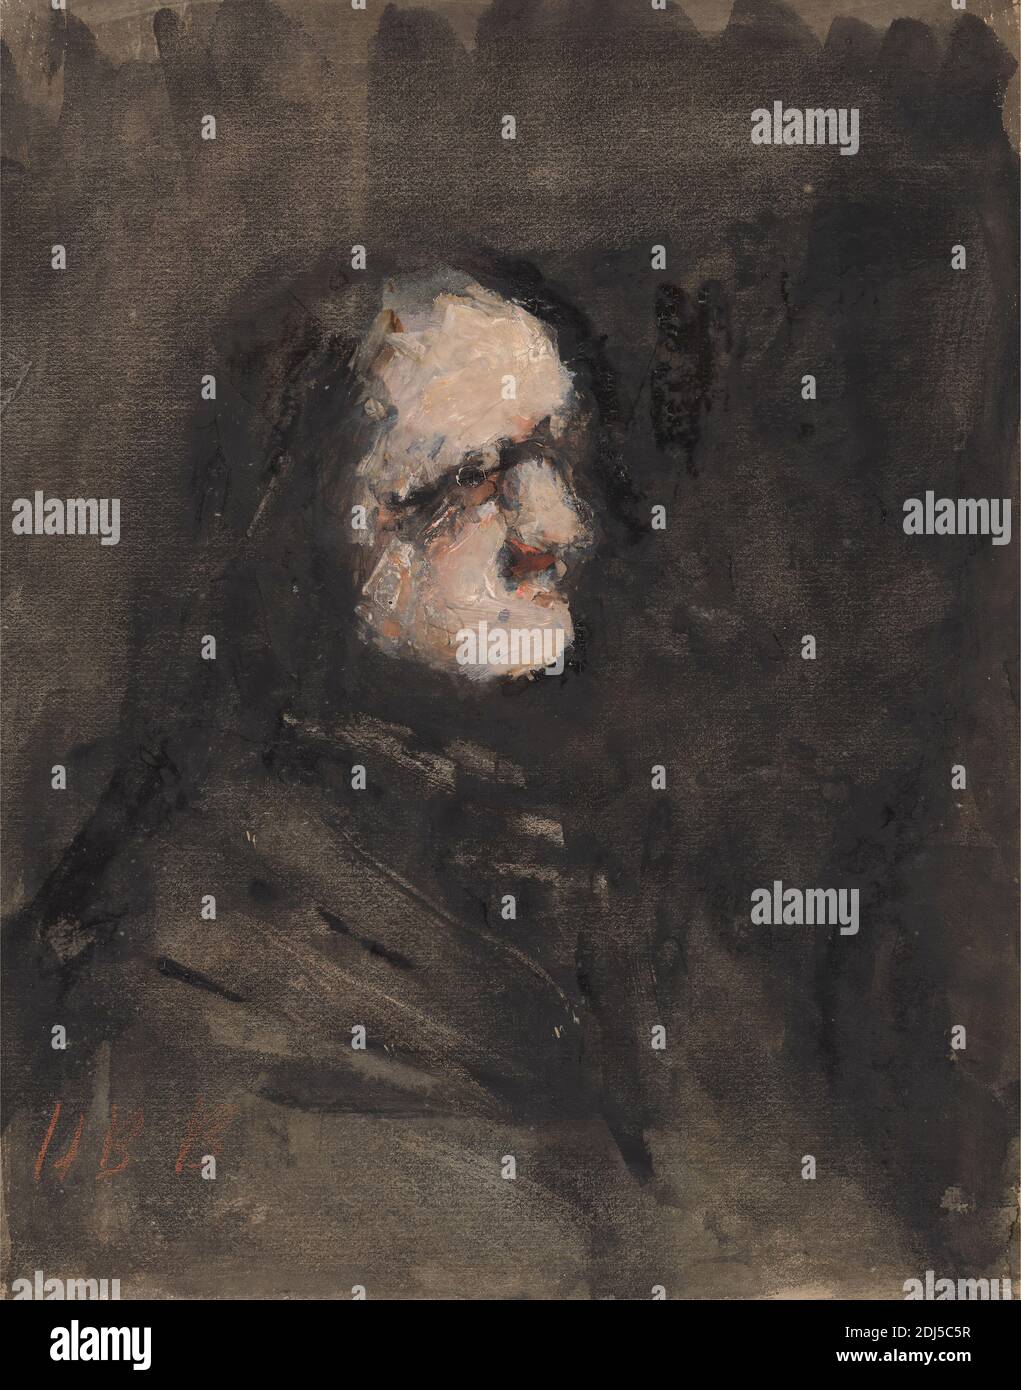 Amouk, después de Goya, Hércules Brabazon Brabazon, 1821–1906, Británico, después de Francisco Goya, 1746–1828, Español, sin fecha, acuarela y gouache sobre papel mediano, ligeramente texturizado, de color crema montado sobre papel moderadamente grueso, de textura moderada, de hoja beige, Soporte: 7 15/16 x 6 1/4 pulgadas (20.1 x 15.8 cm) y Hoja: 7 13/16 x 6 1/8 pulgadas (19.8 x 15.6 cm), oscuro, hombre, retrato, perfil (figura Foto de stock